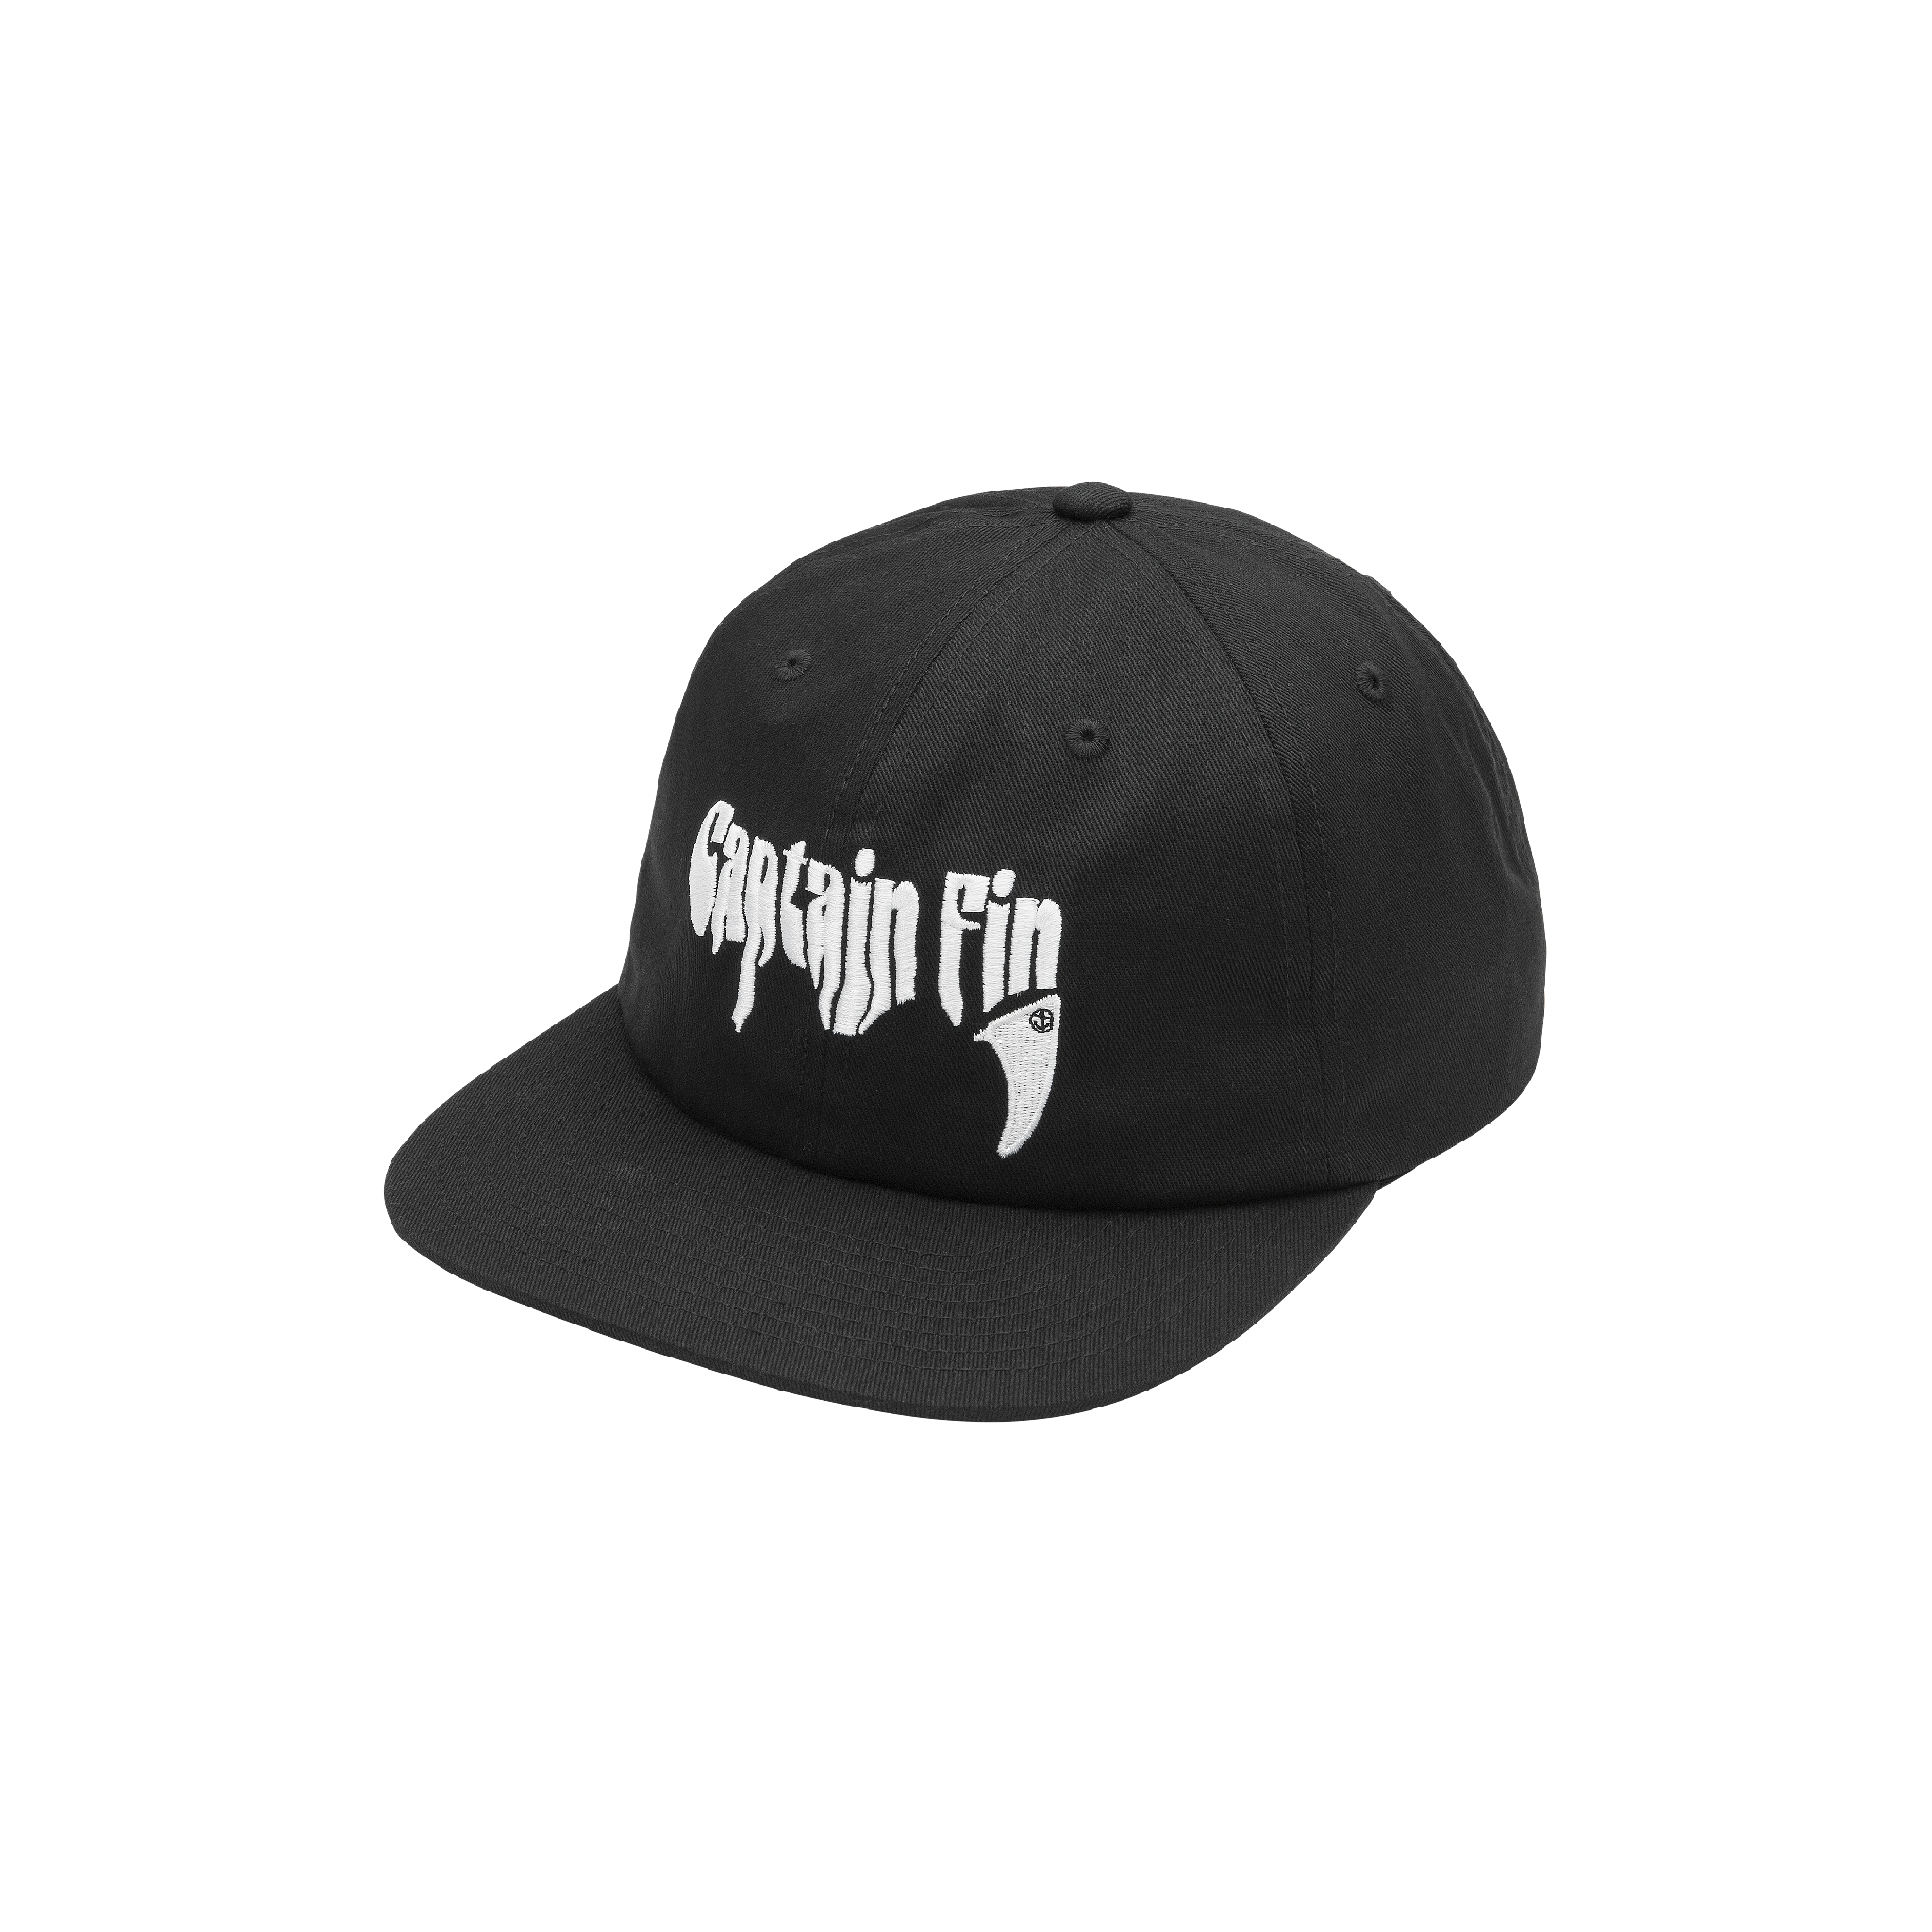 Fanger Hat - Black